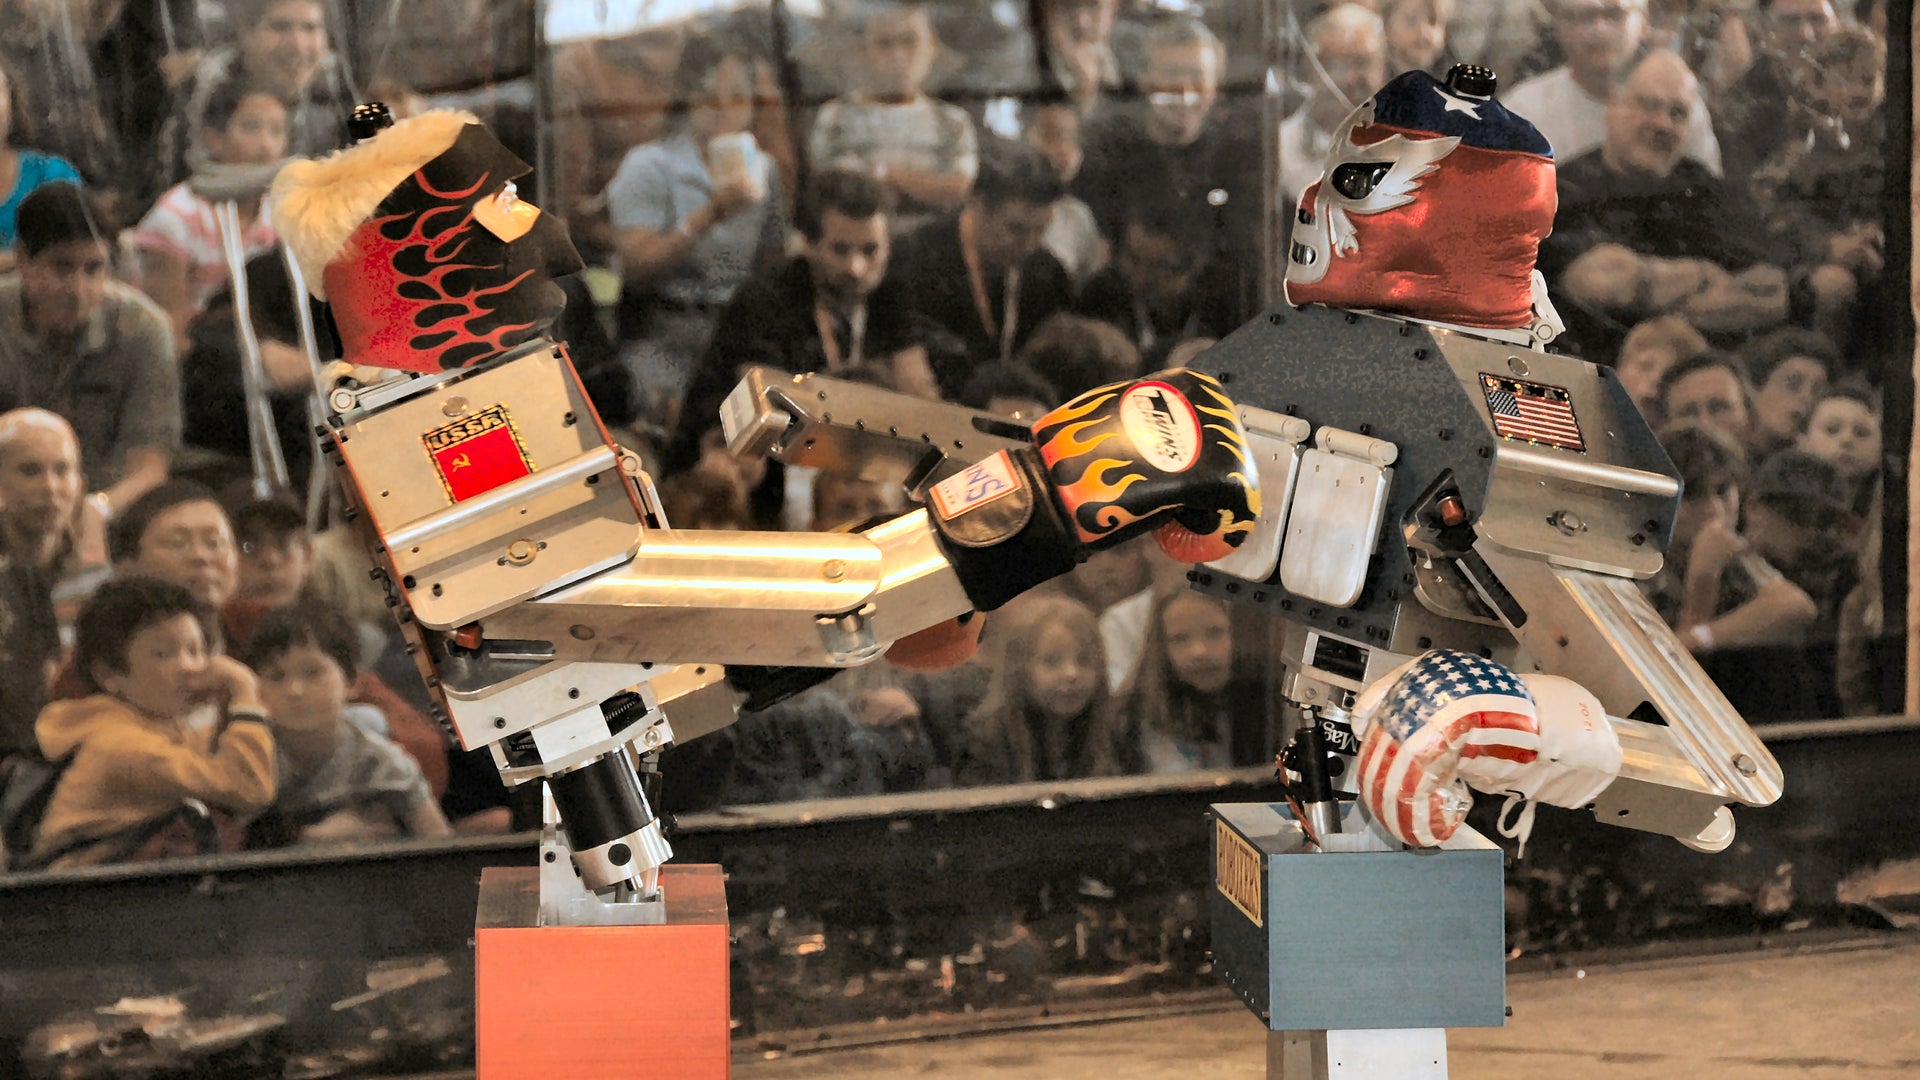 Битва роботов соревнования. Битва роботов. Боевой робот для соревнований. Бои роботов соревнования. Робототехника бои роботов.